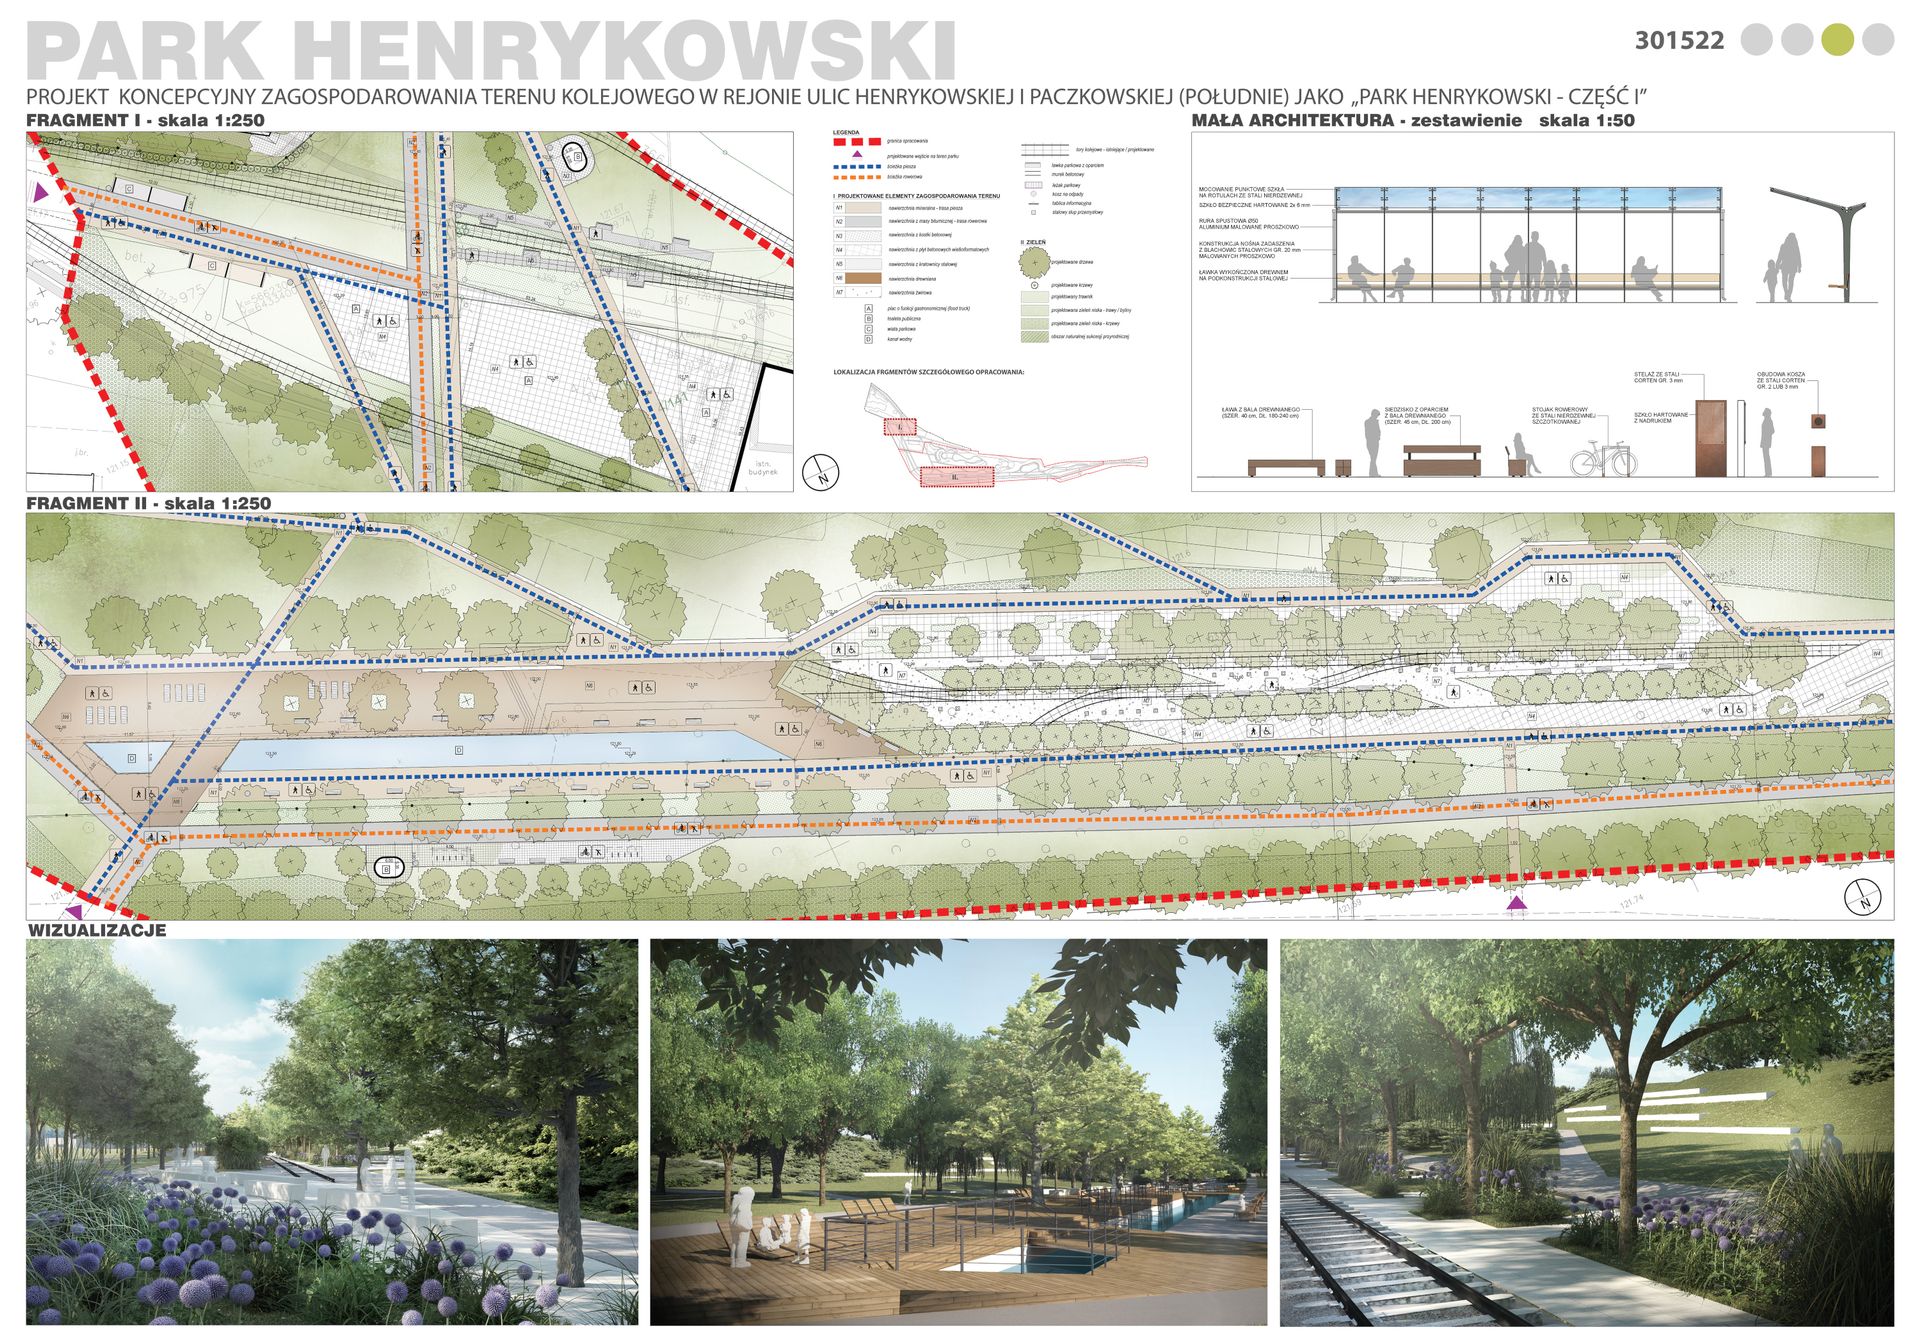 Rozstrzygnięto konkurs na projekt parku Henrykowskiego 